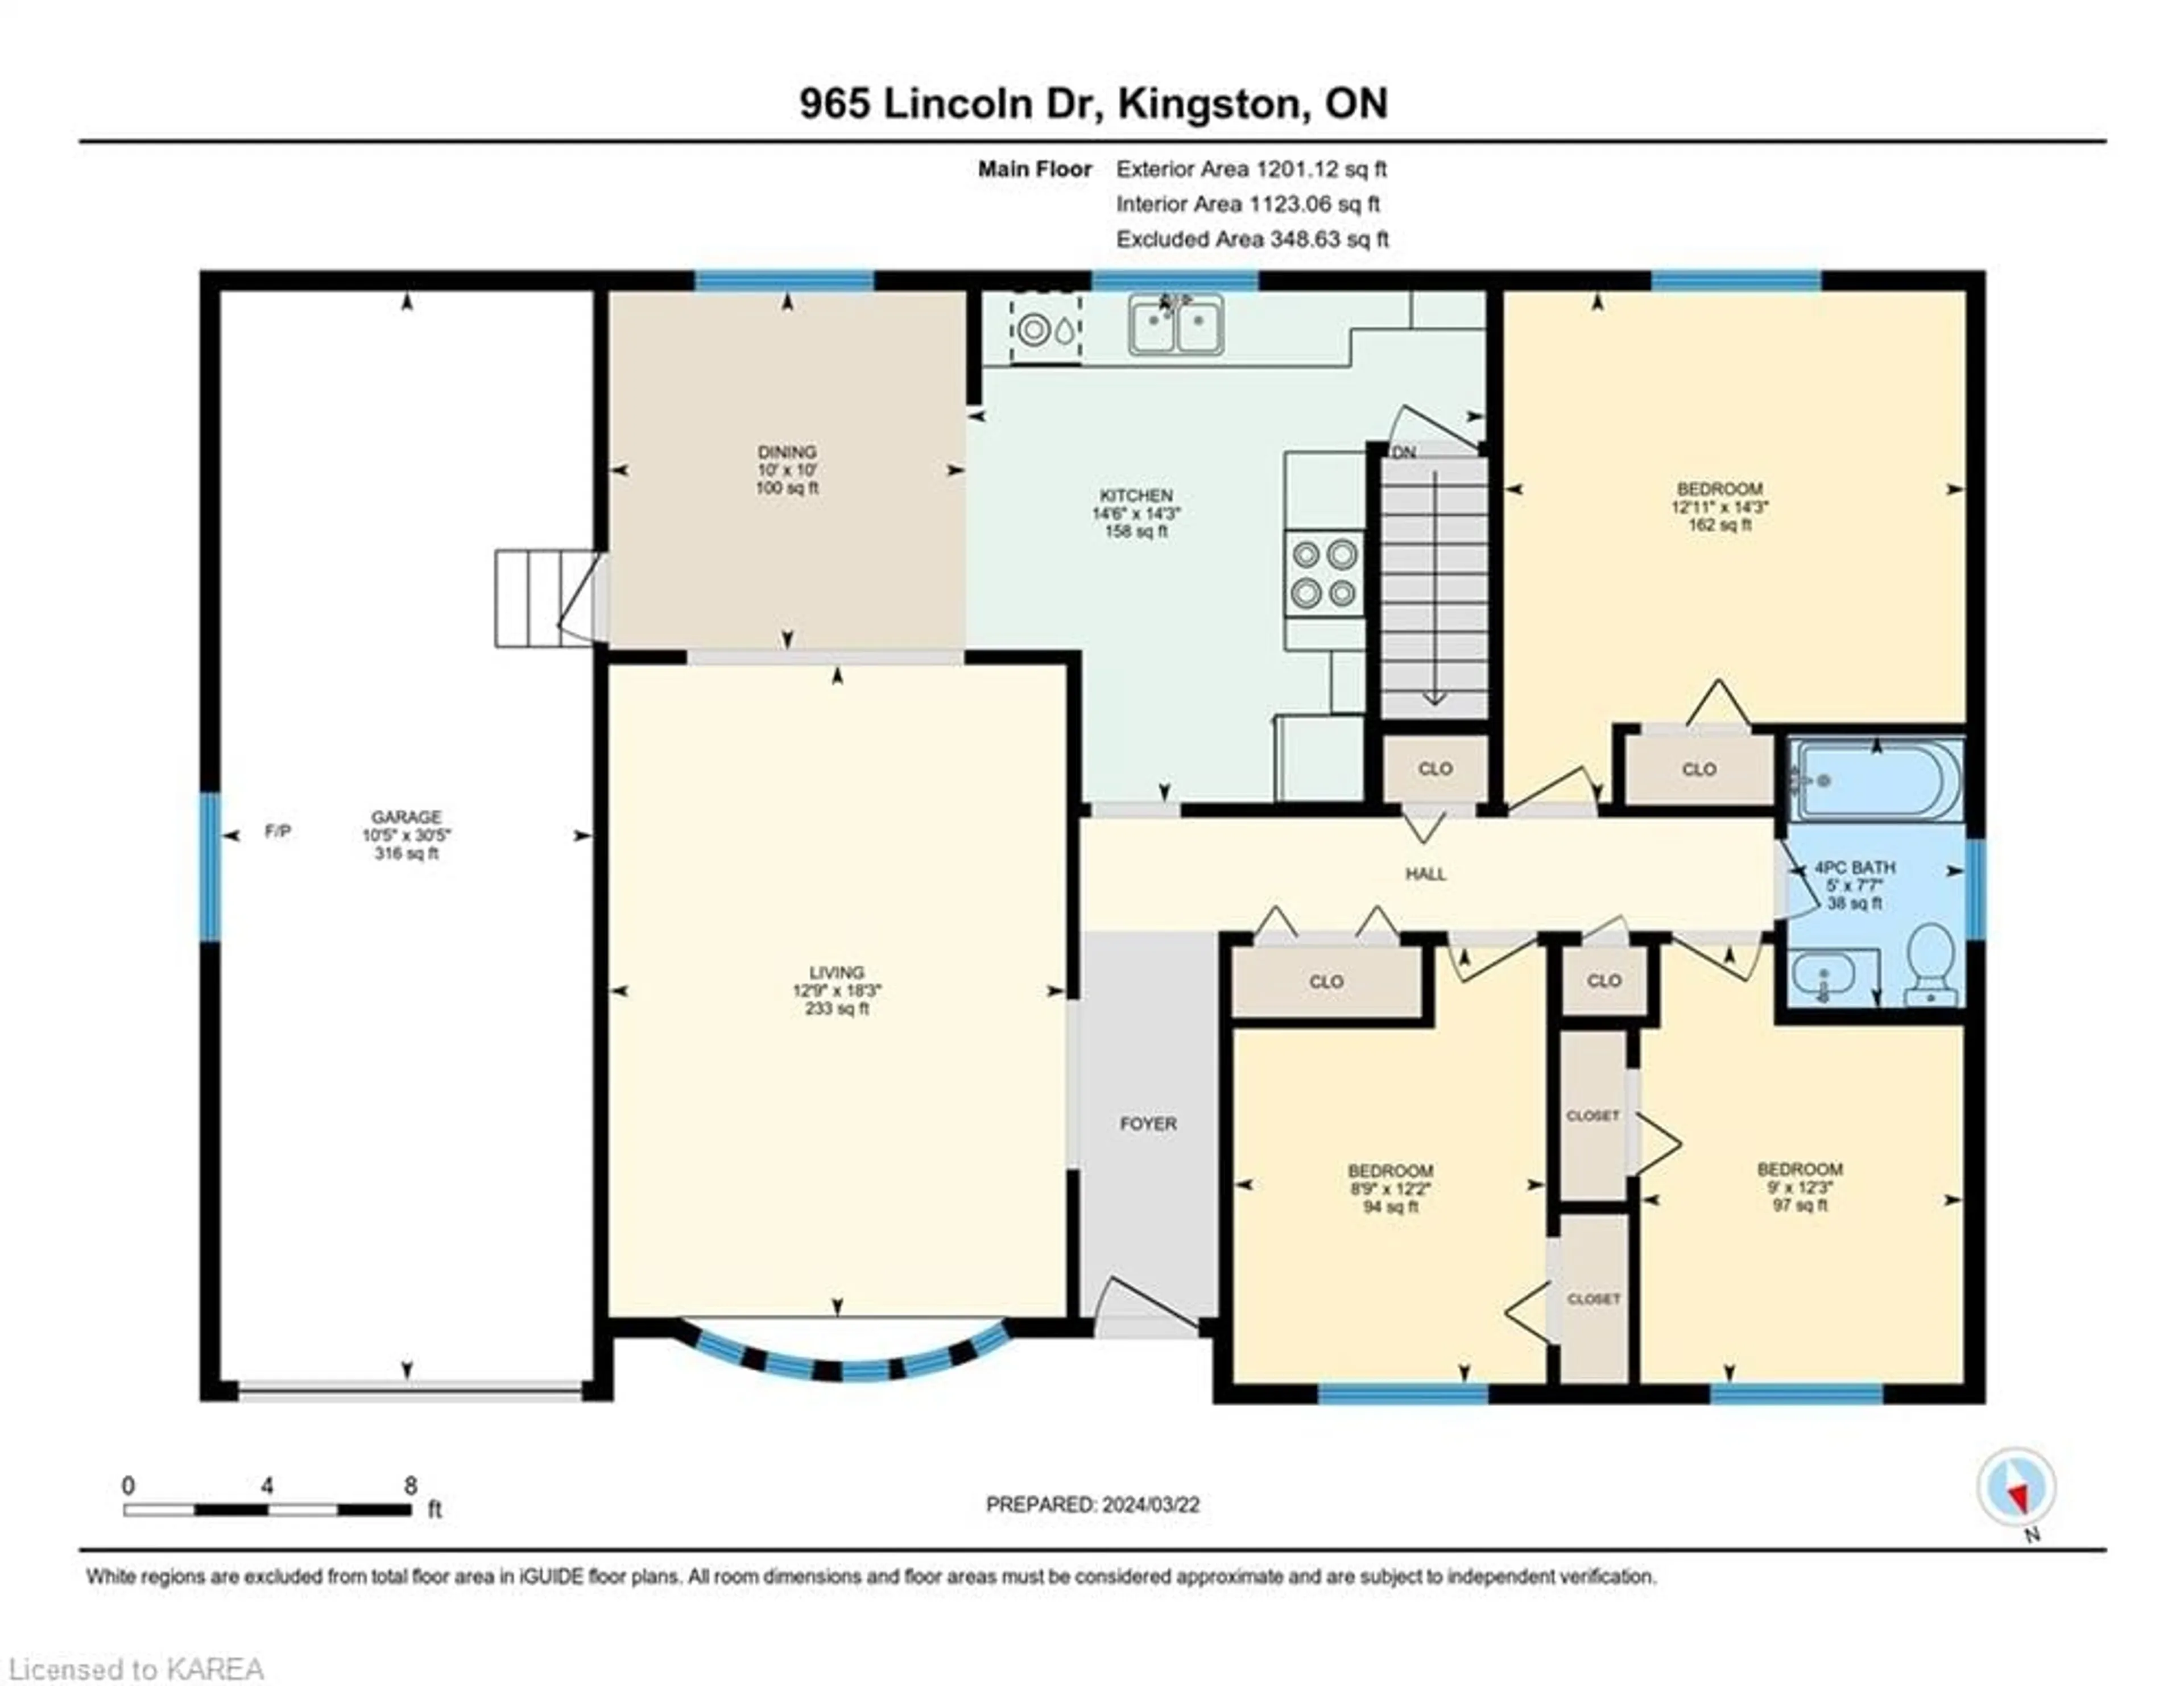 Floor plan for 965 Lincoln Dr, Kingston Ontario K7M 4Z3